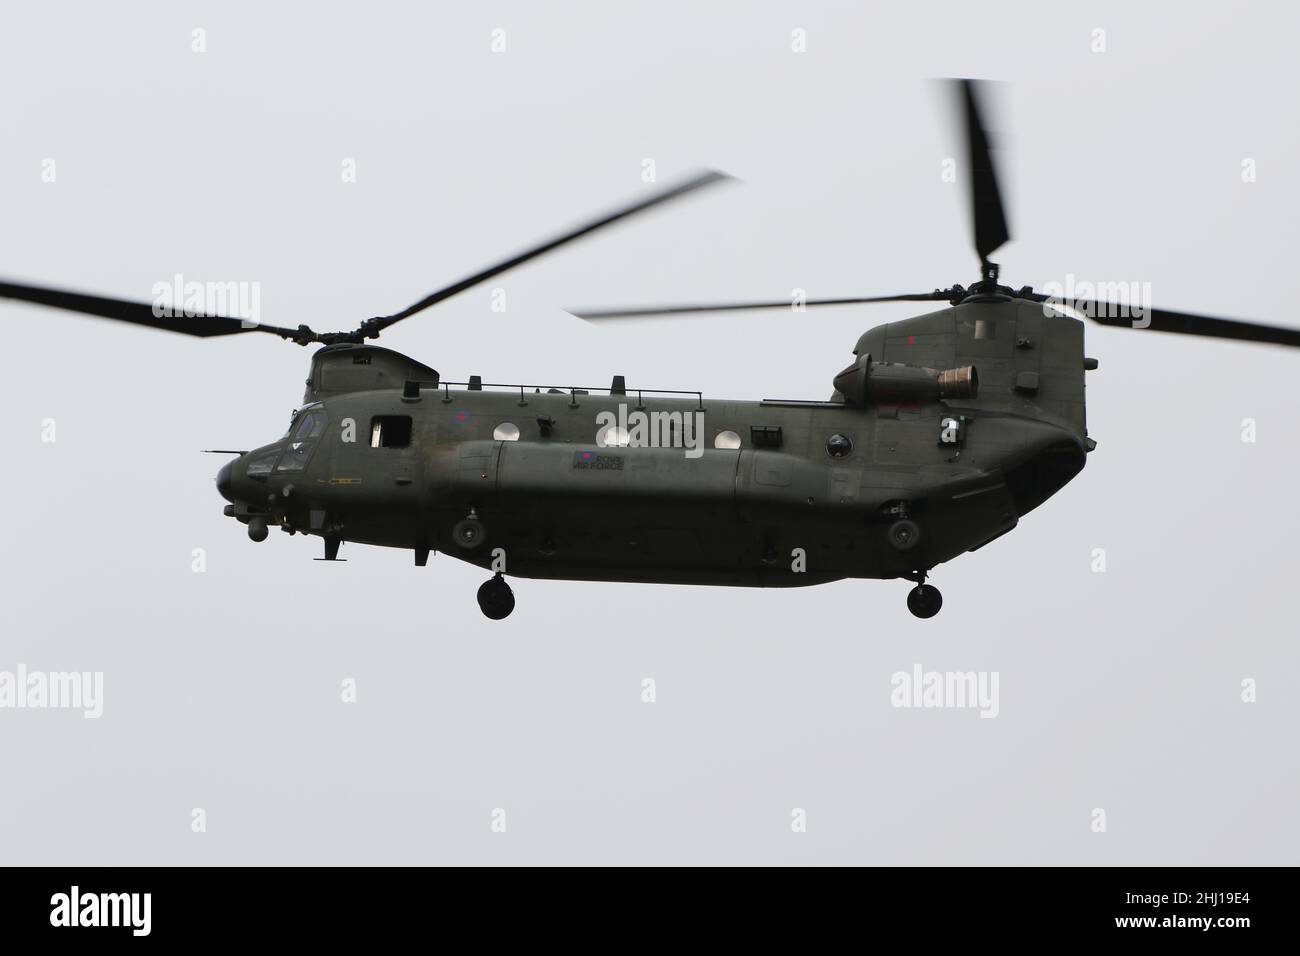 ZH897, un Boeing Chinook HC.5 exploité par la Royal Air Force, arrivant à l'aéroport international de Prestwick à Ayrshire, en Écosse. Banque D'Images